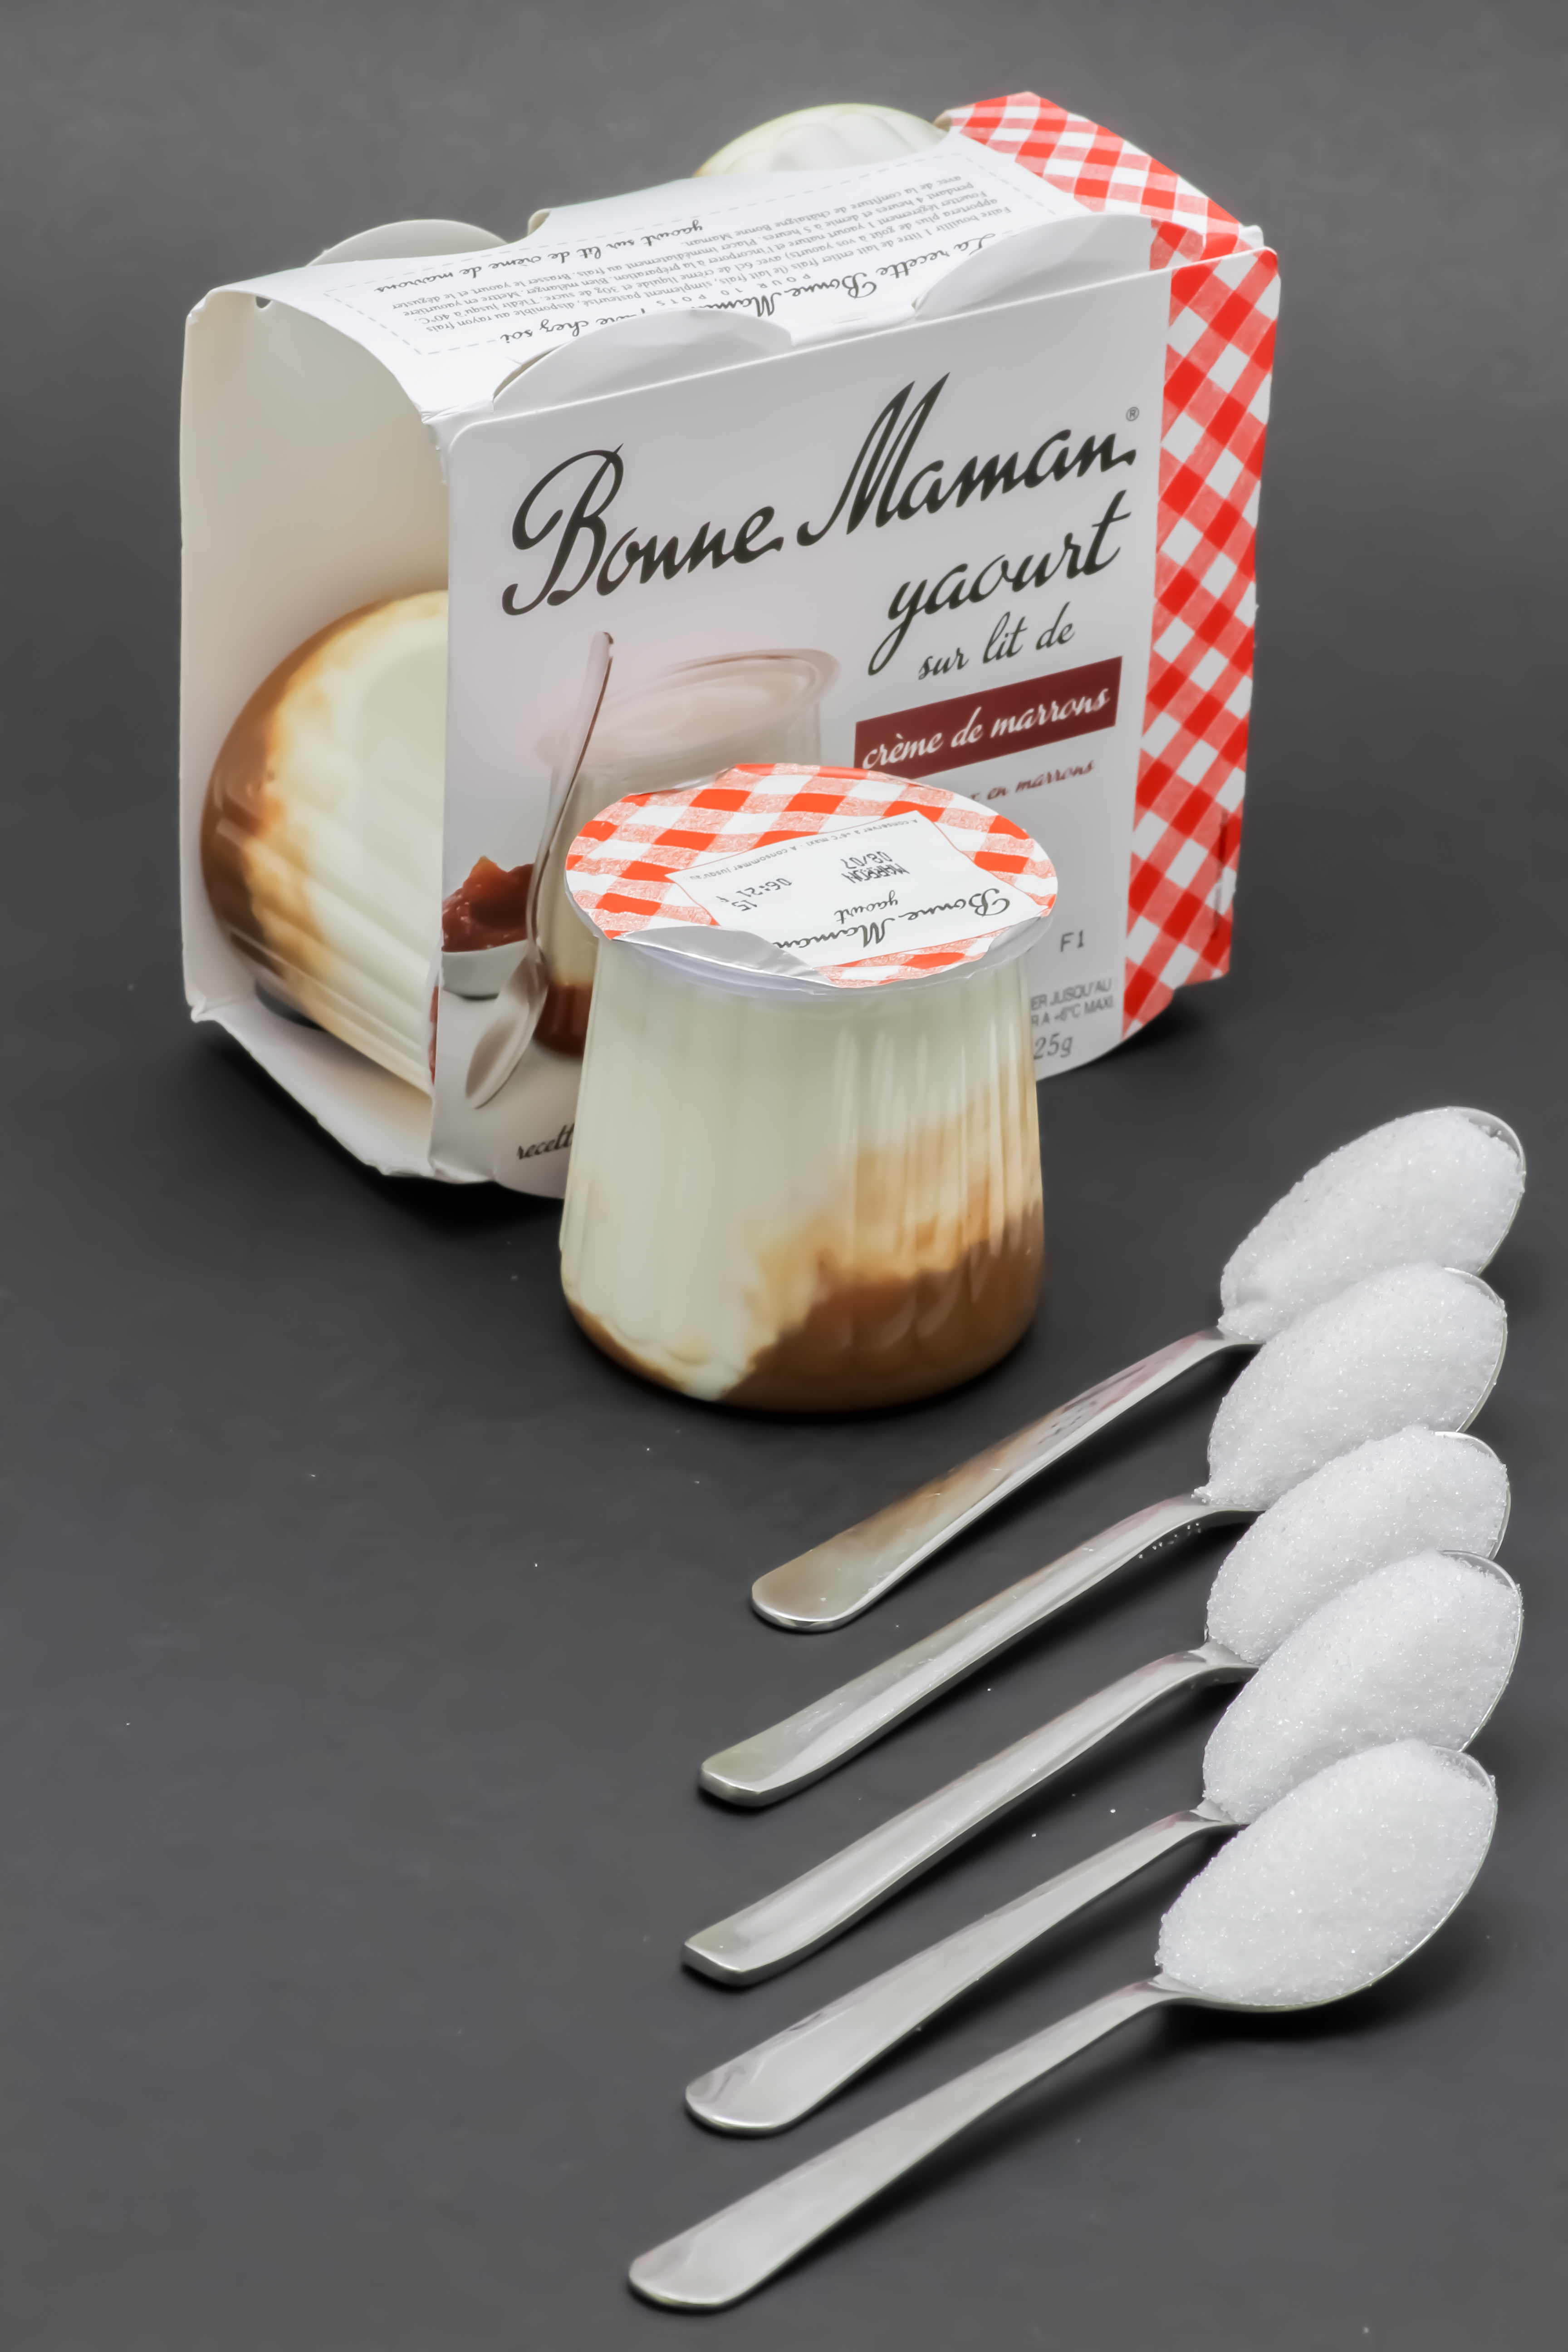 1 yaourt sur lit de crème de marrons Bonne Maman contient 4,8 cuil. à café de sucre soit 23,8g